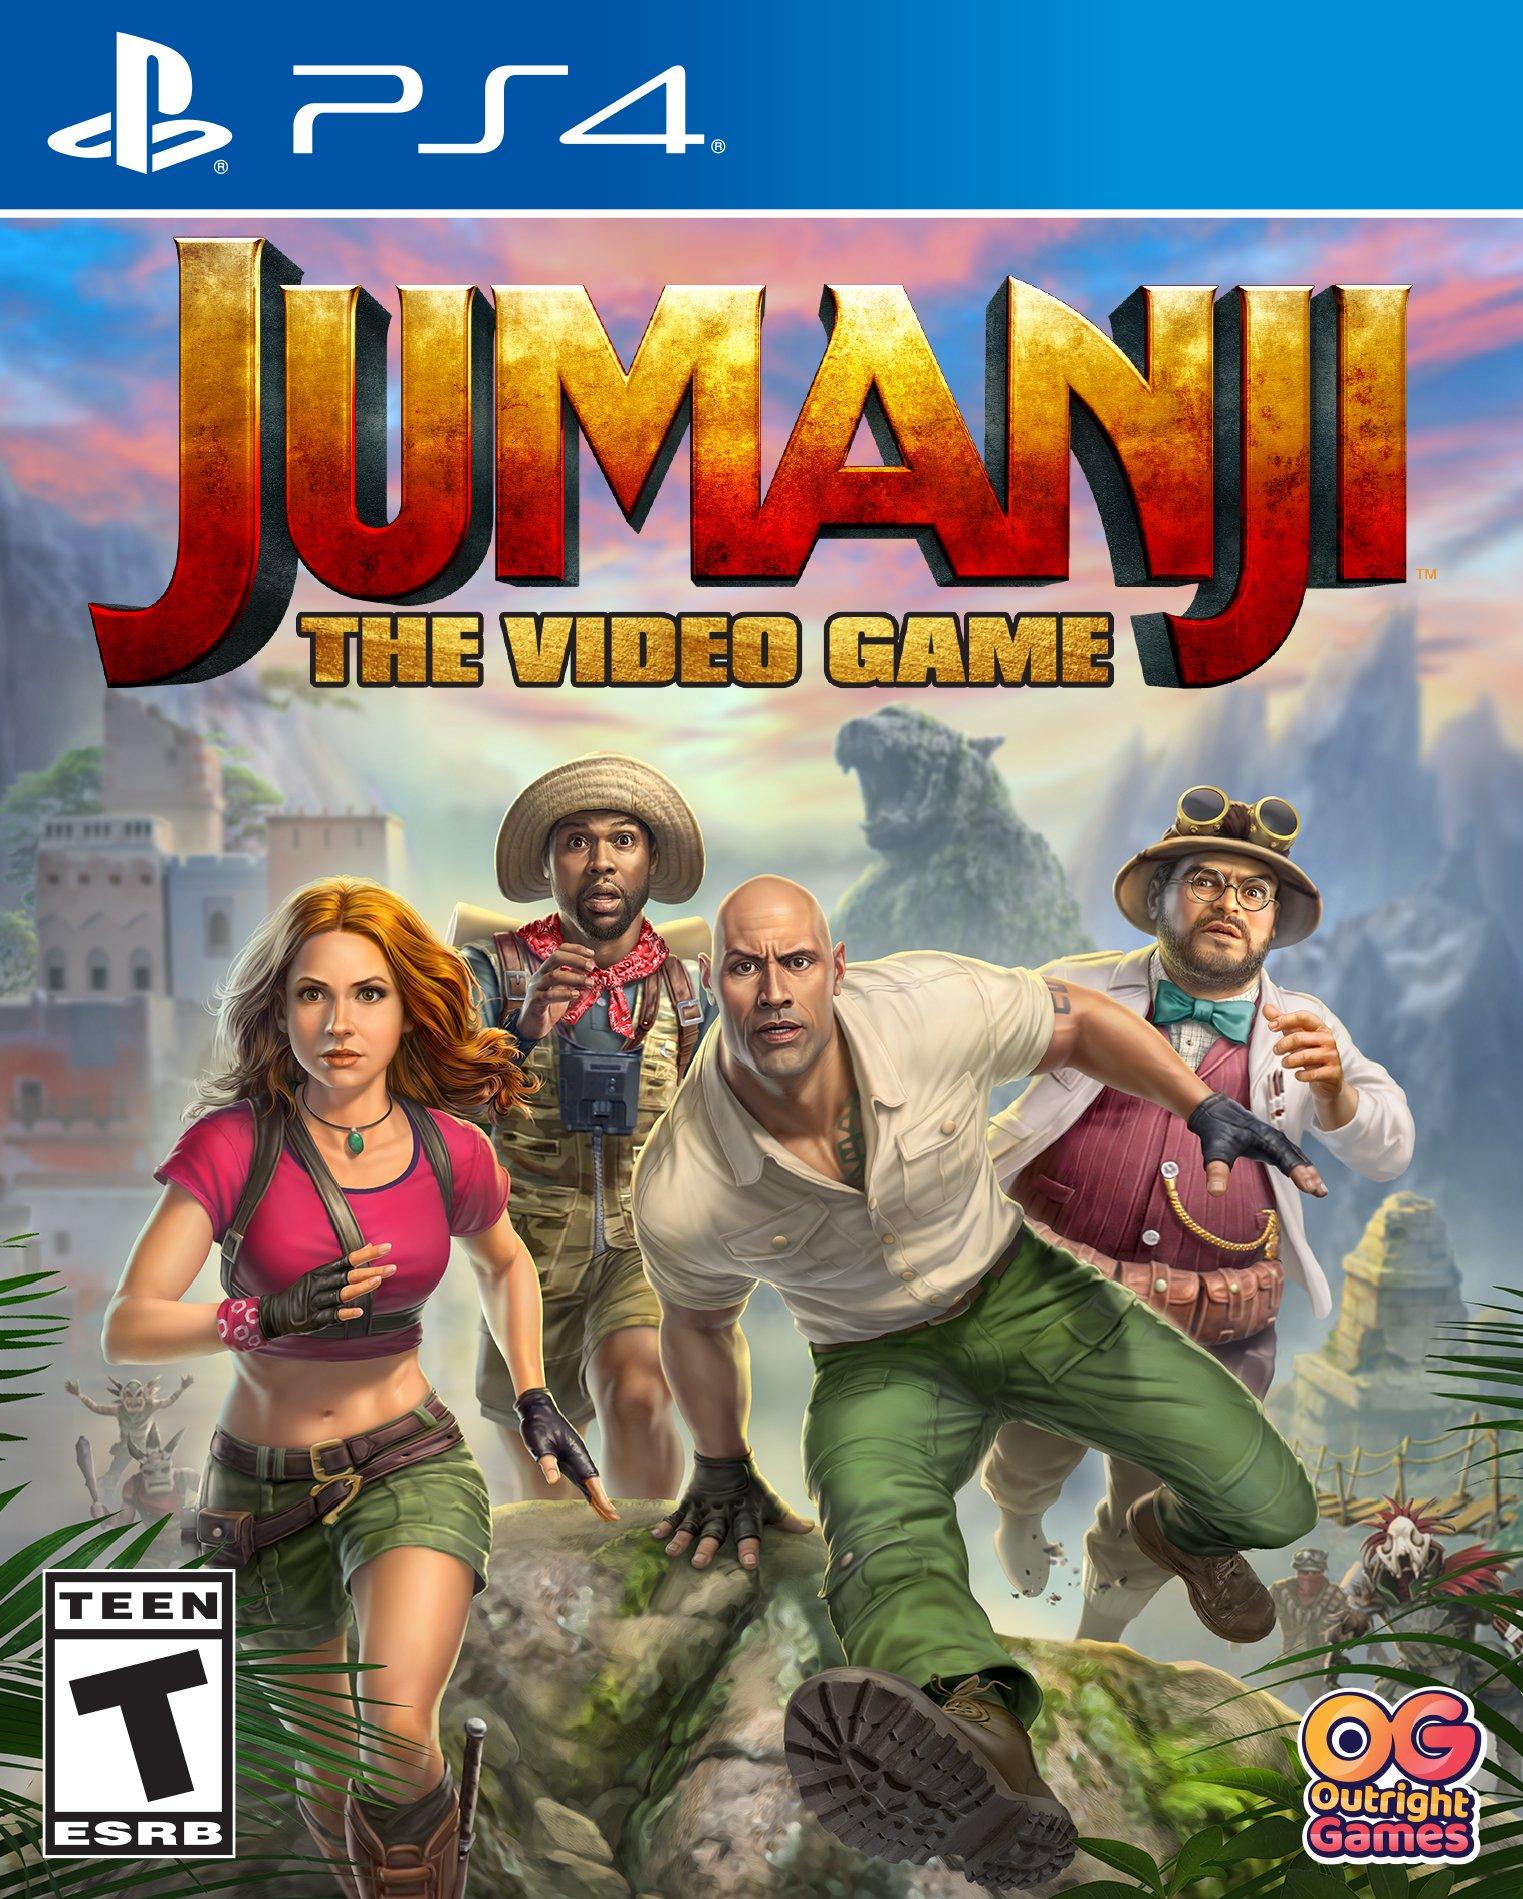 Lærd Til ære for Lav vej Jumanji: The Video Game - PlayStation 4 | PlayStation 4 | GameStop